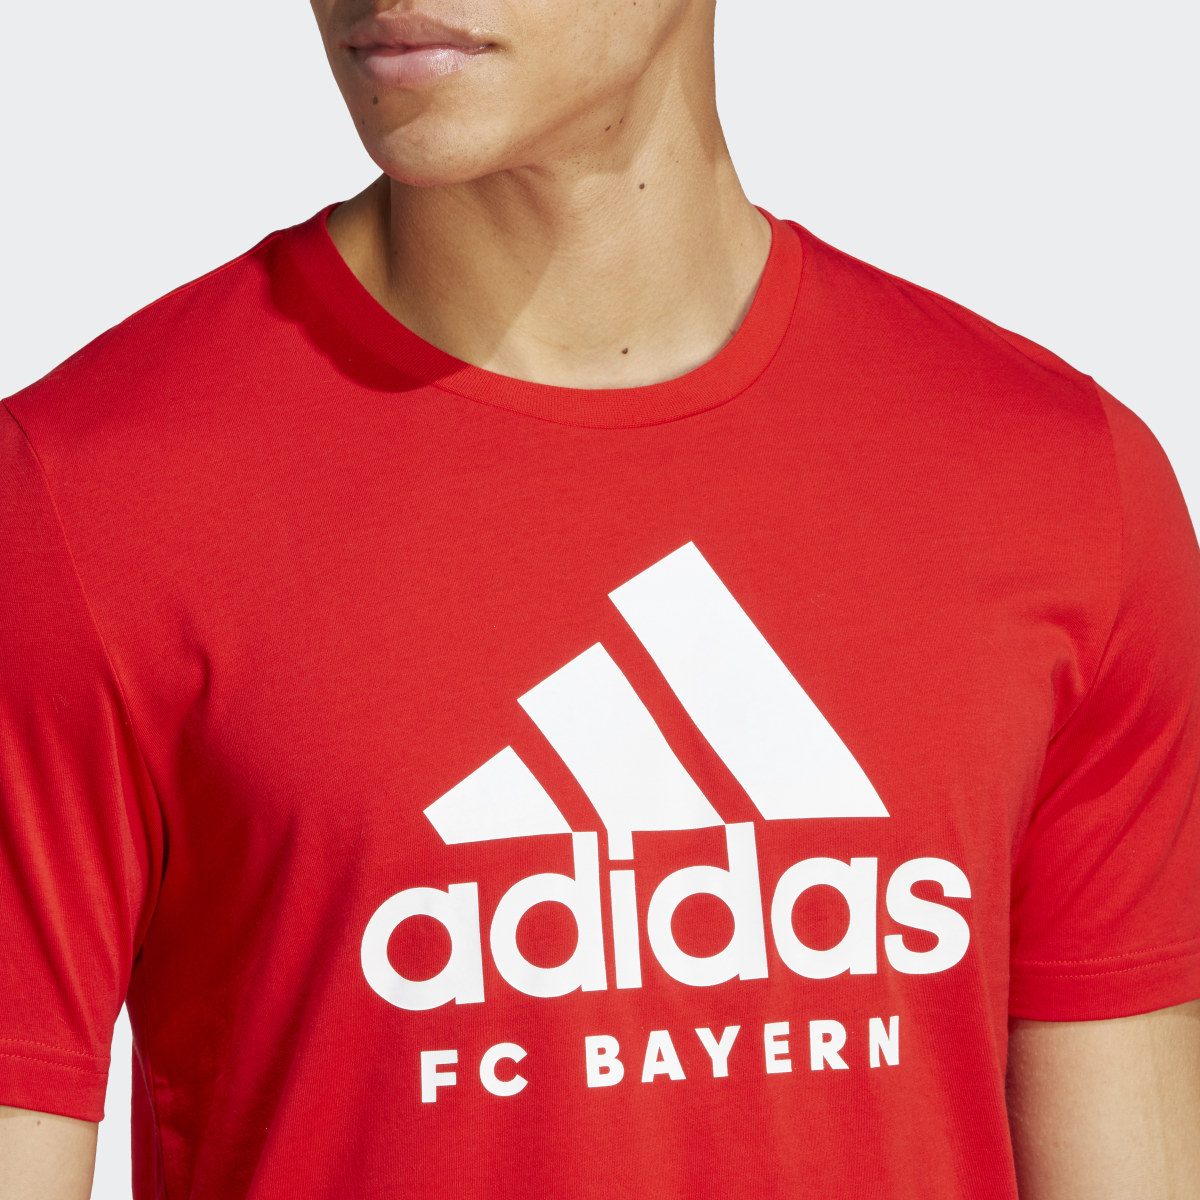 Adidas FC Bayern DNA Graphic Tişört. 6